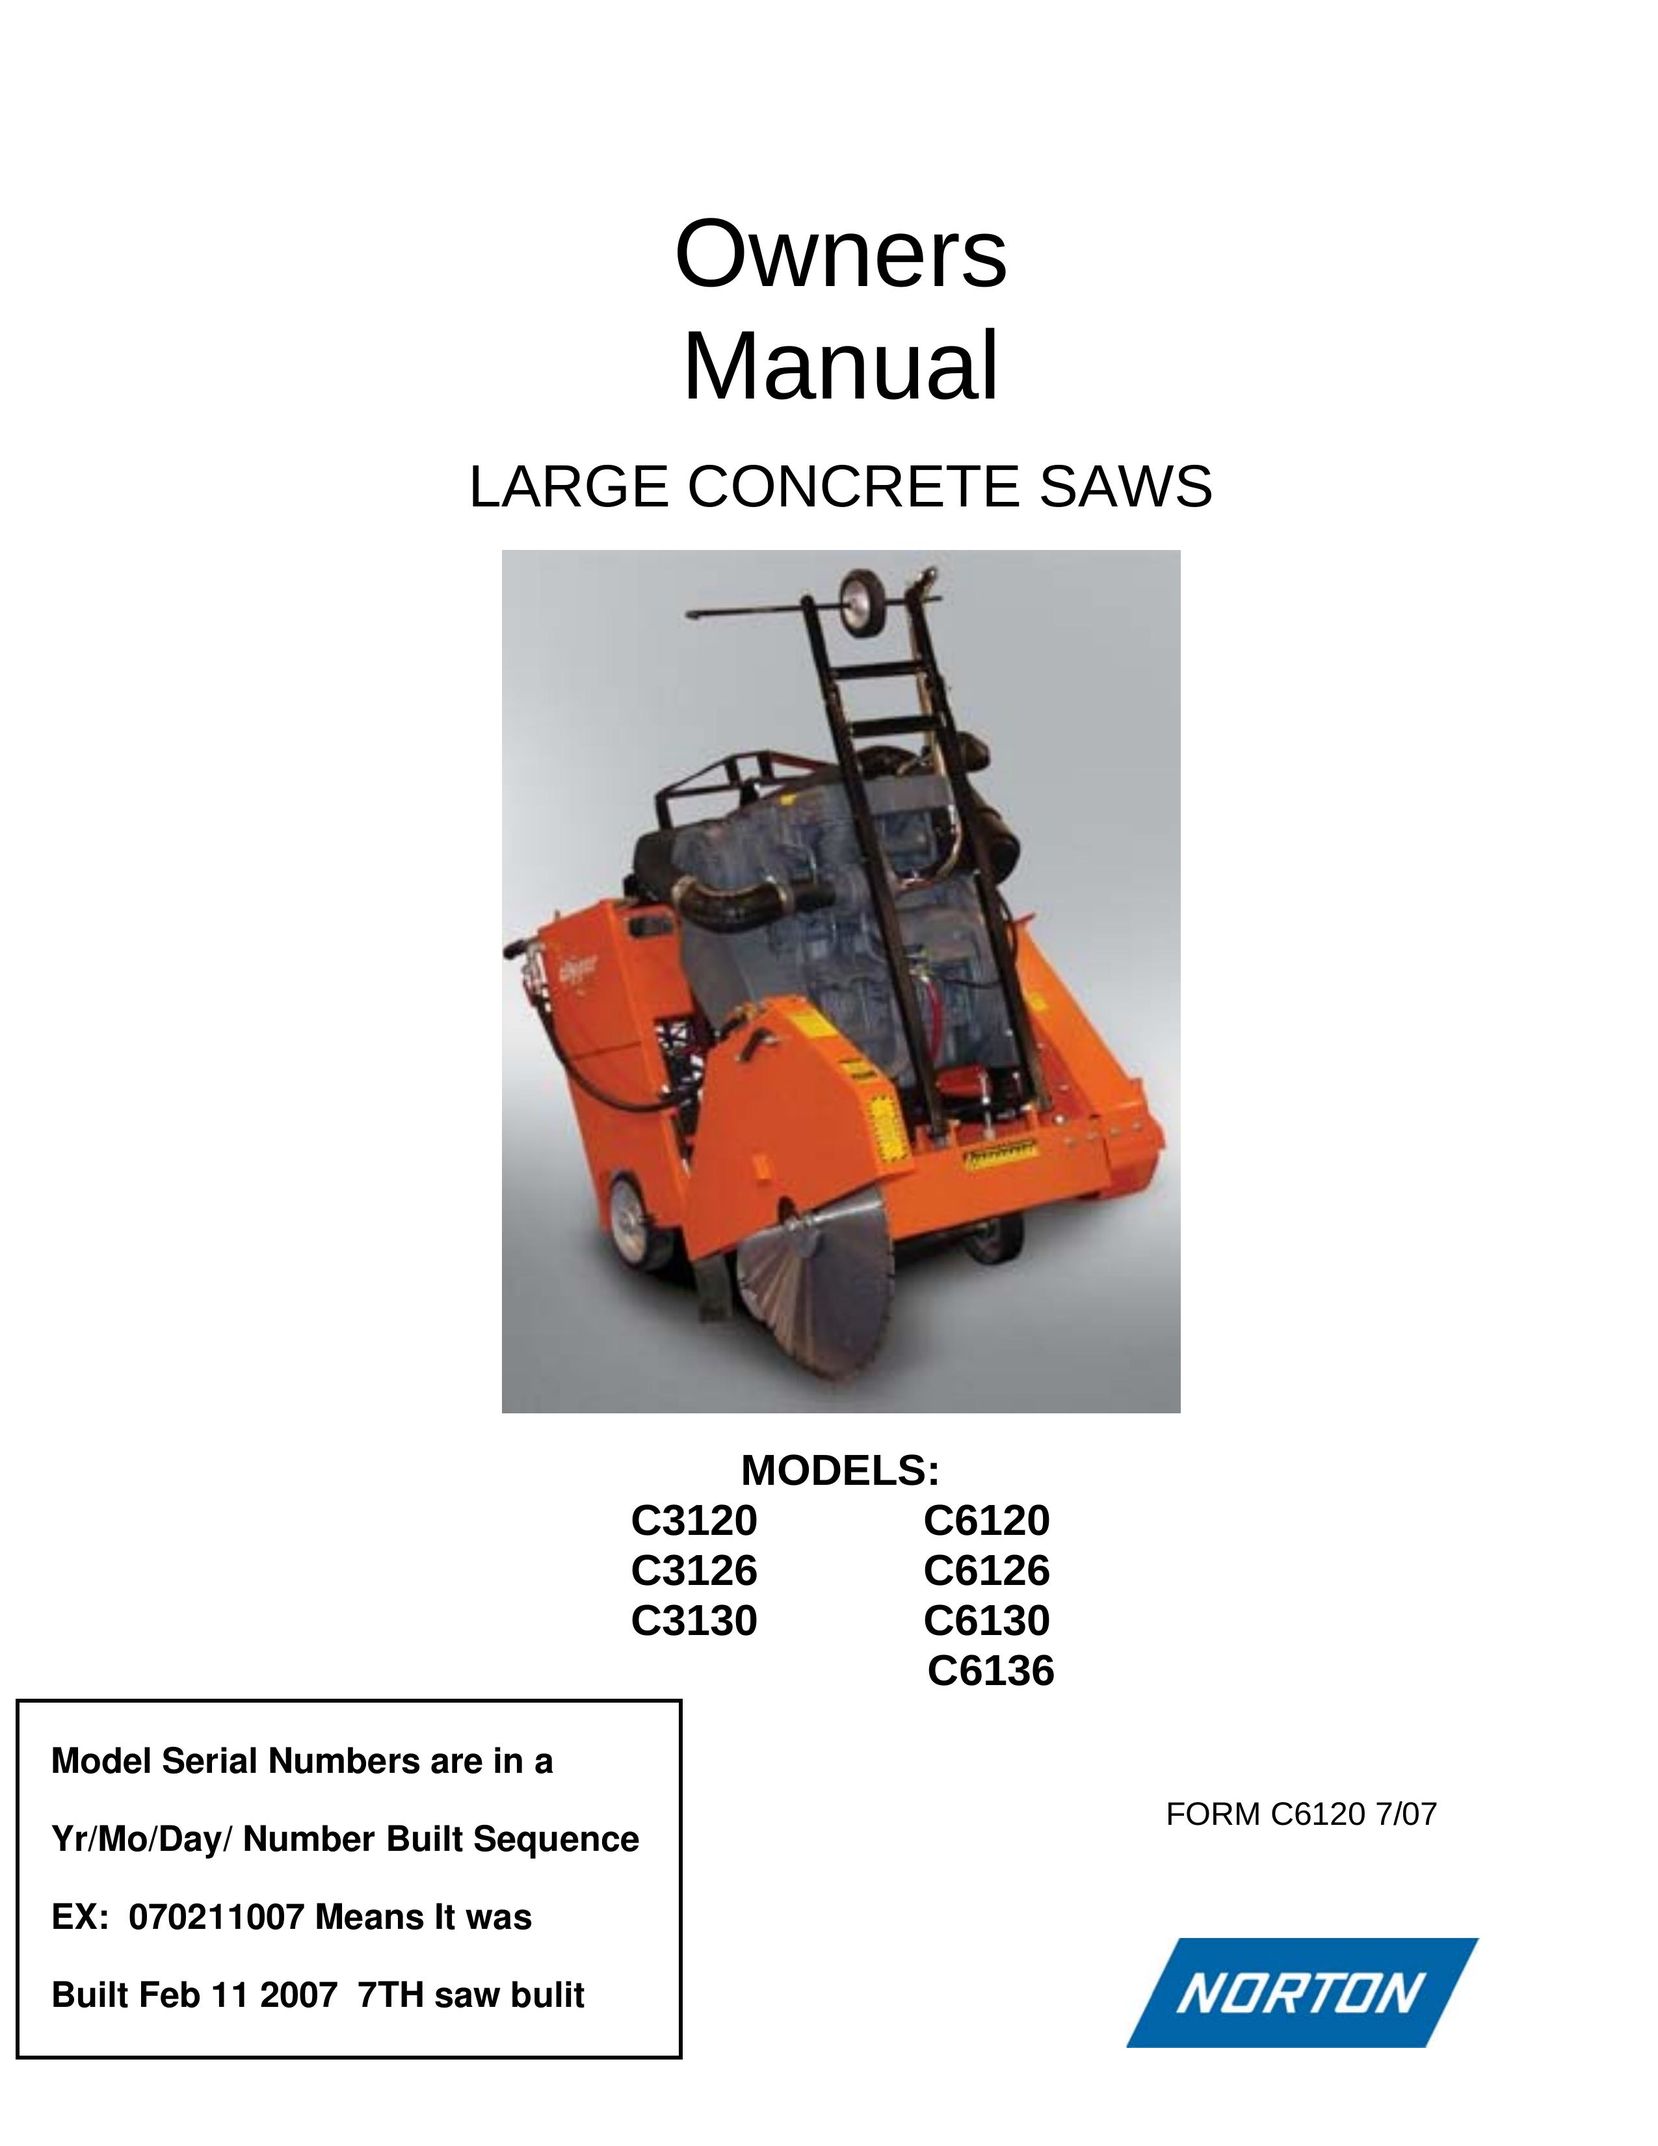 Norton Abrasives C3126 Saw User Manual